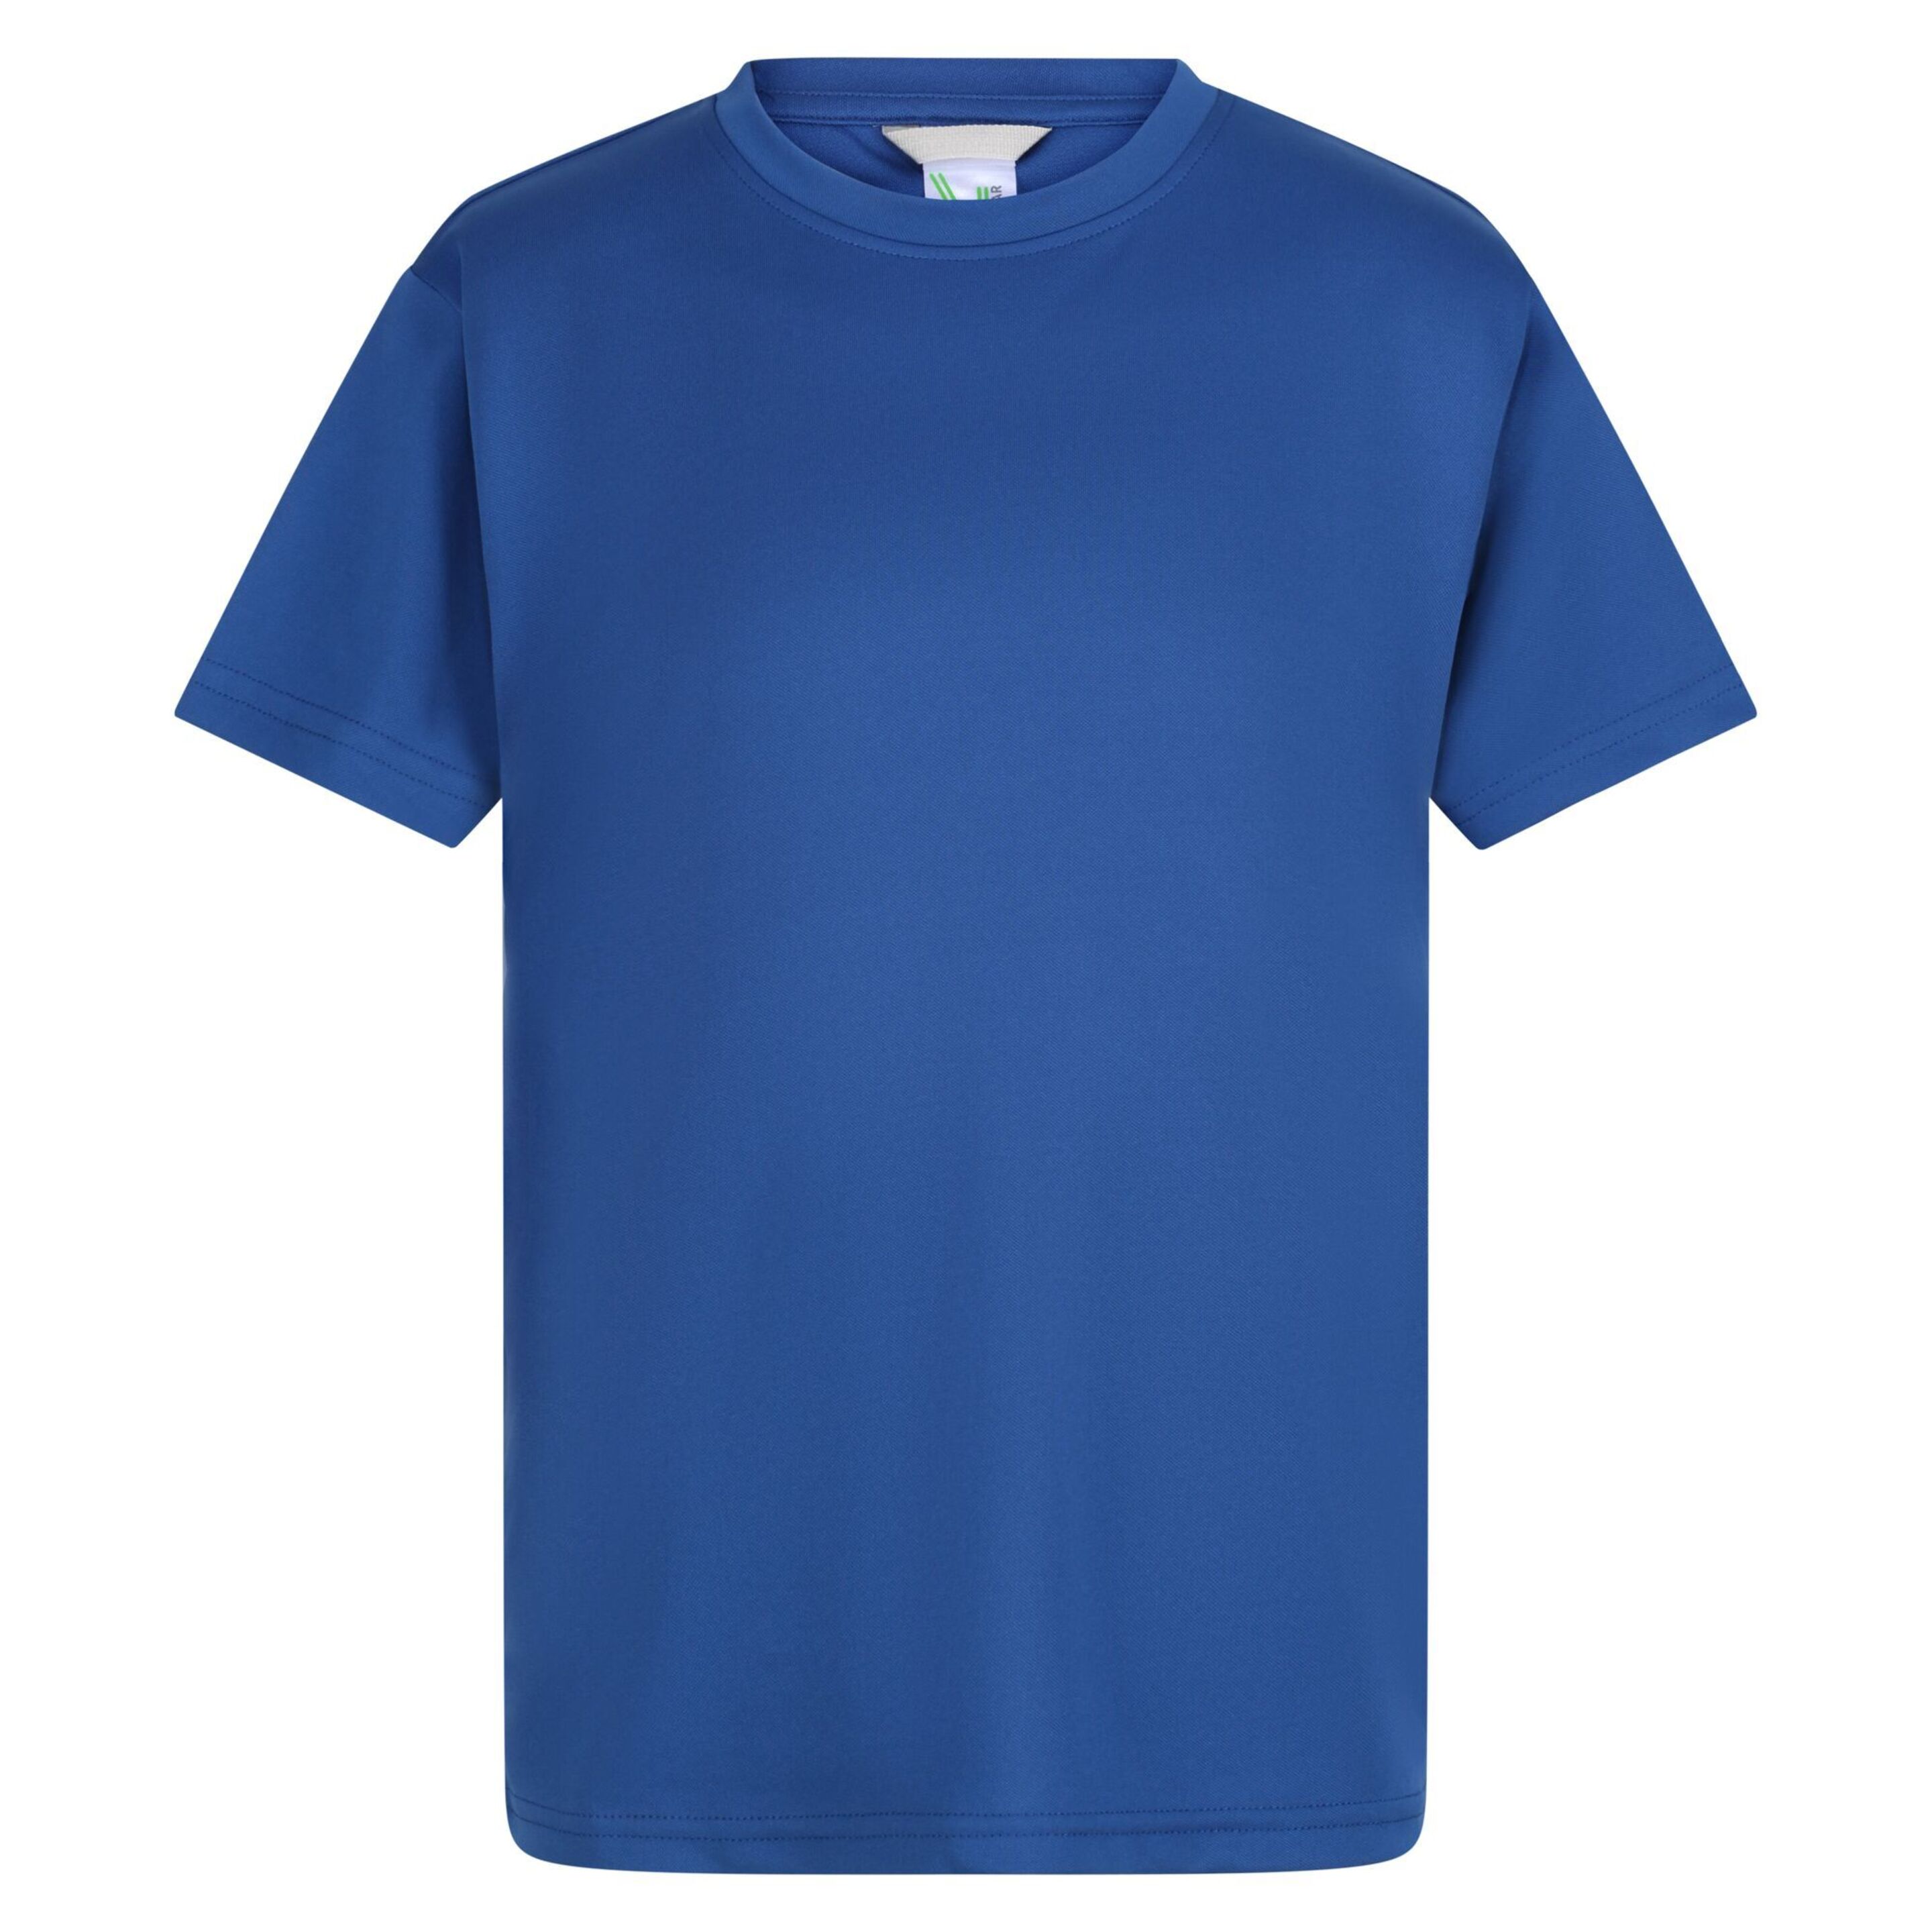 Crianças/ Crianças Camiseta Torino Regatta (Royal Blue)